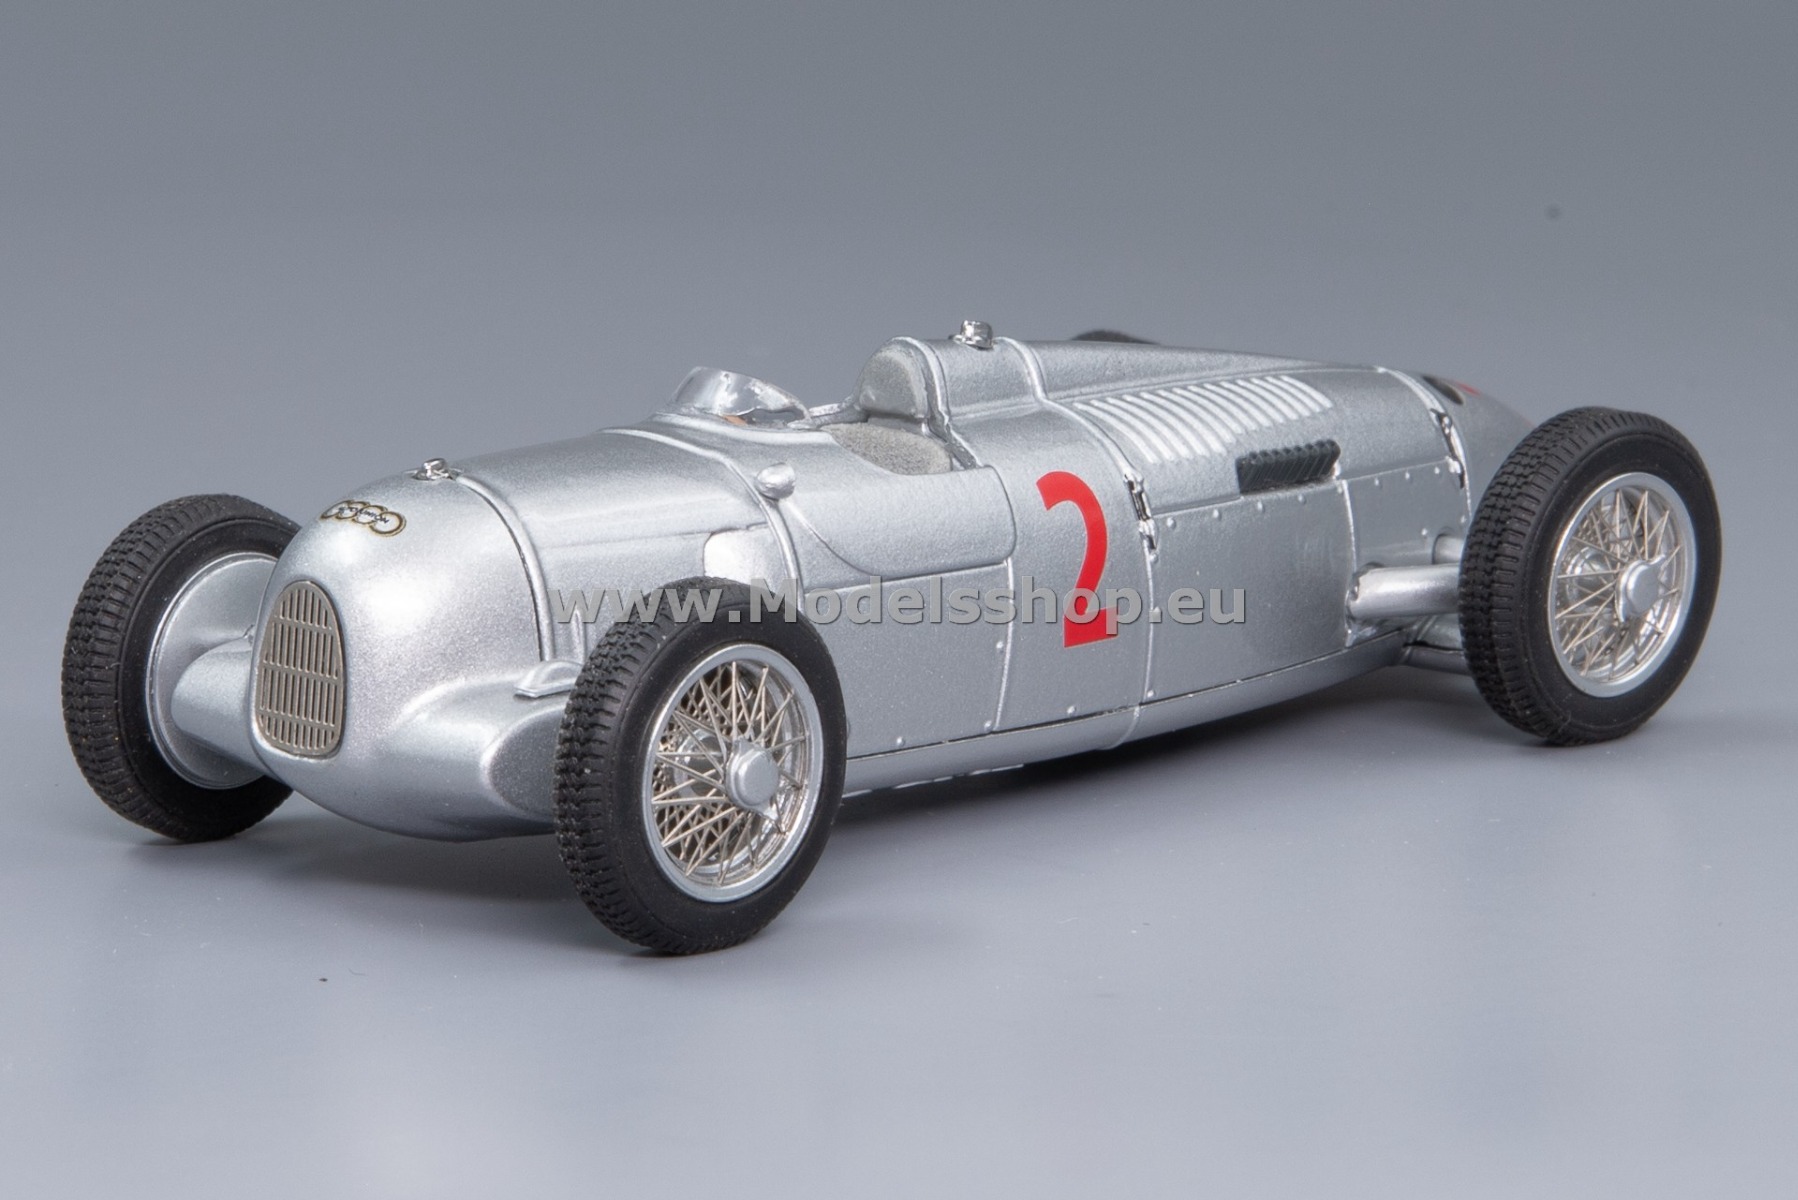 Minichamps 410353002 Auto Union Typ B Avus, No.2, 3rd place Avus Rennen 1935, Achille Varzi